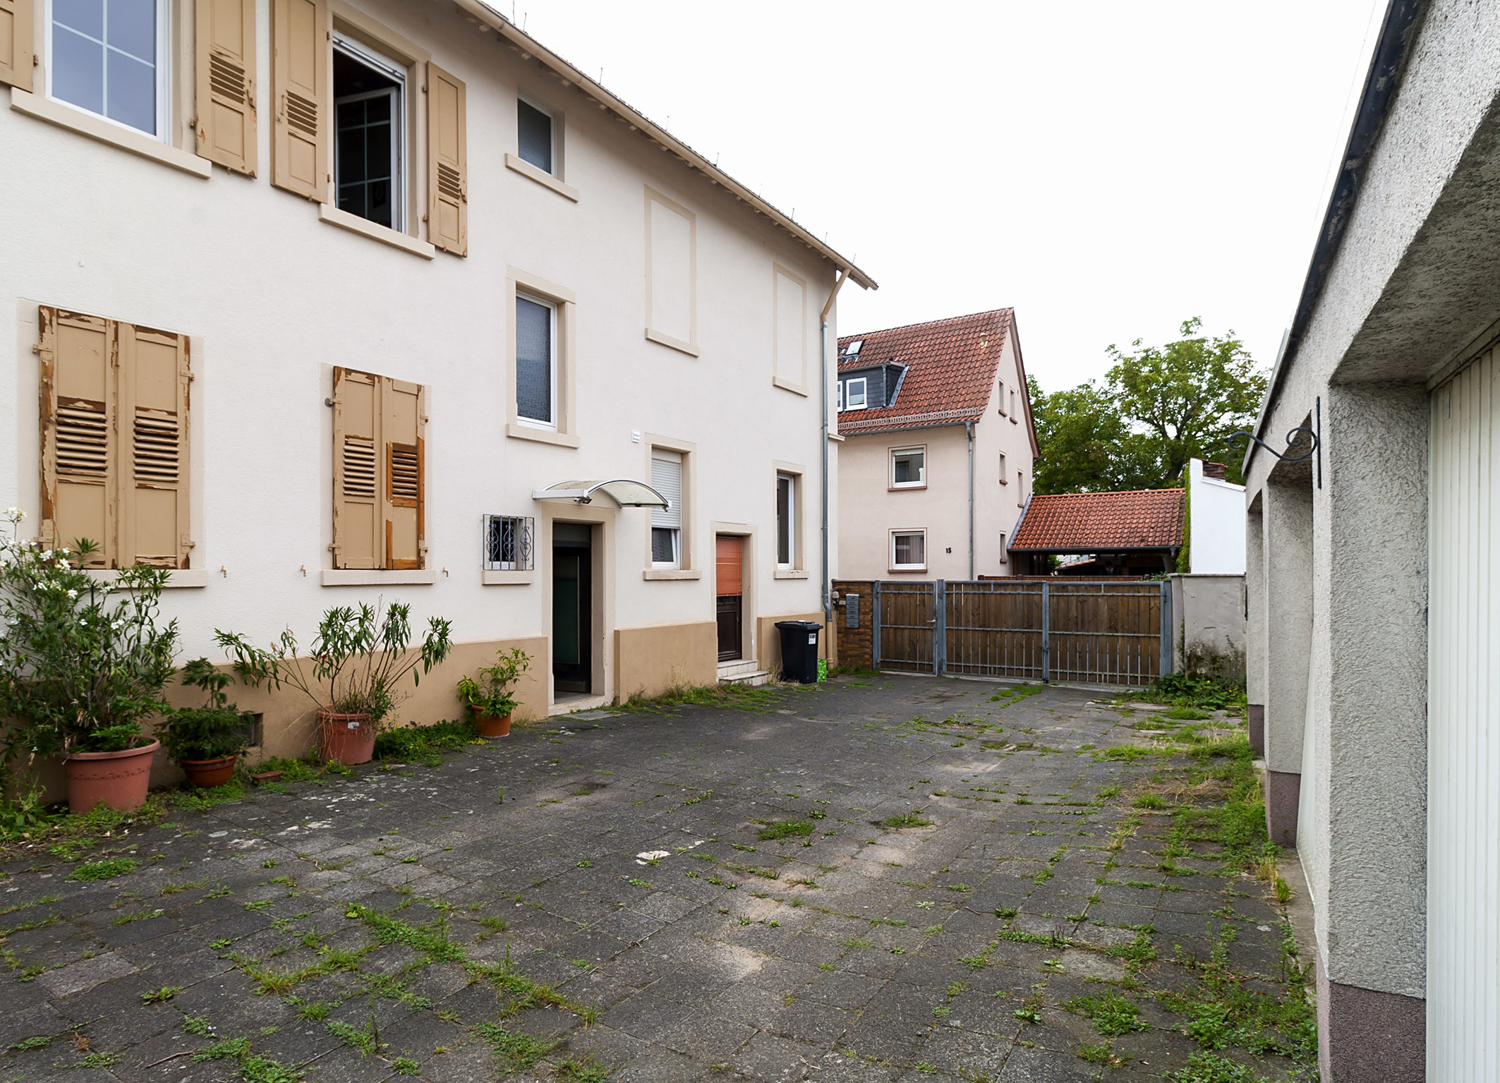 5-Familienhaus und Doppelbungalow auf einem Grundstück in Darmstadt-Arheilgen